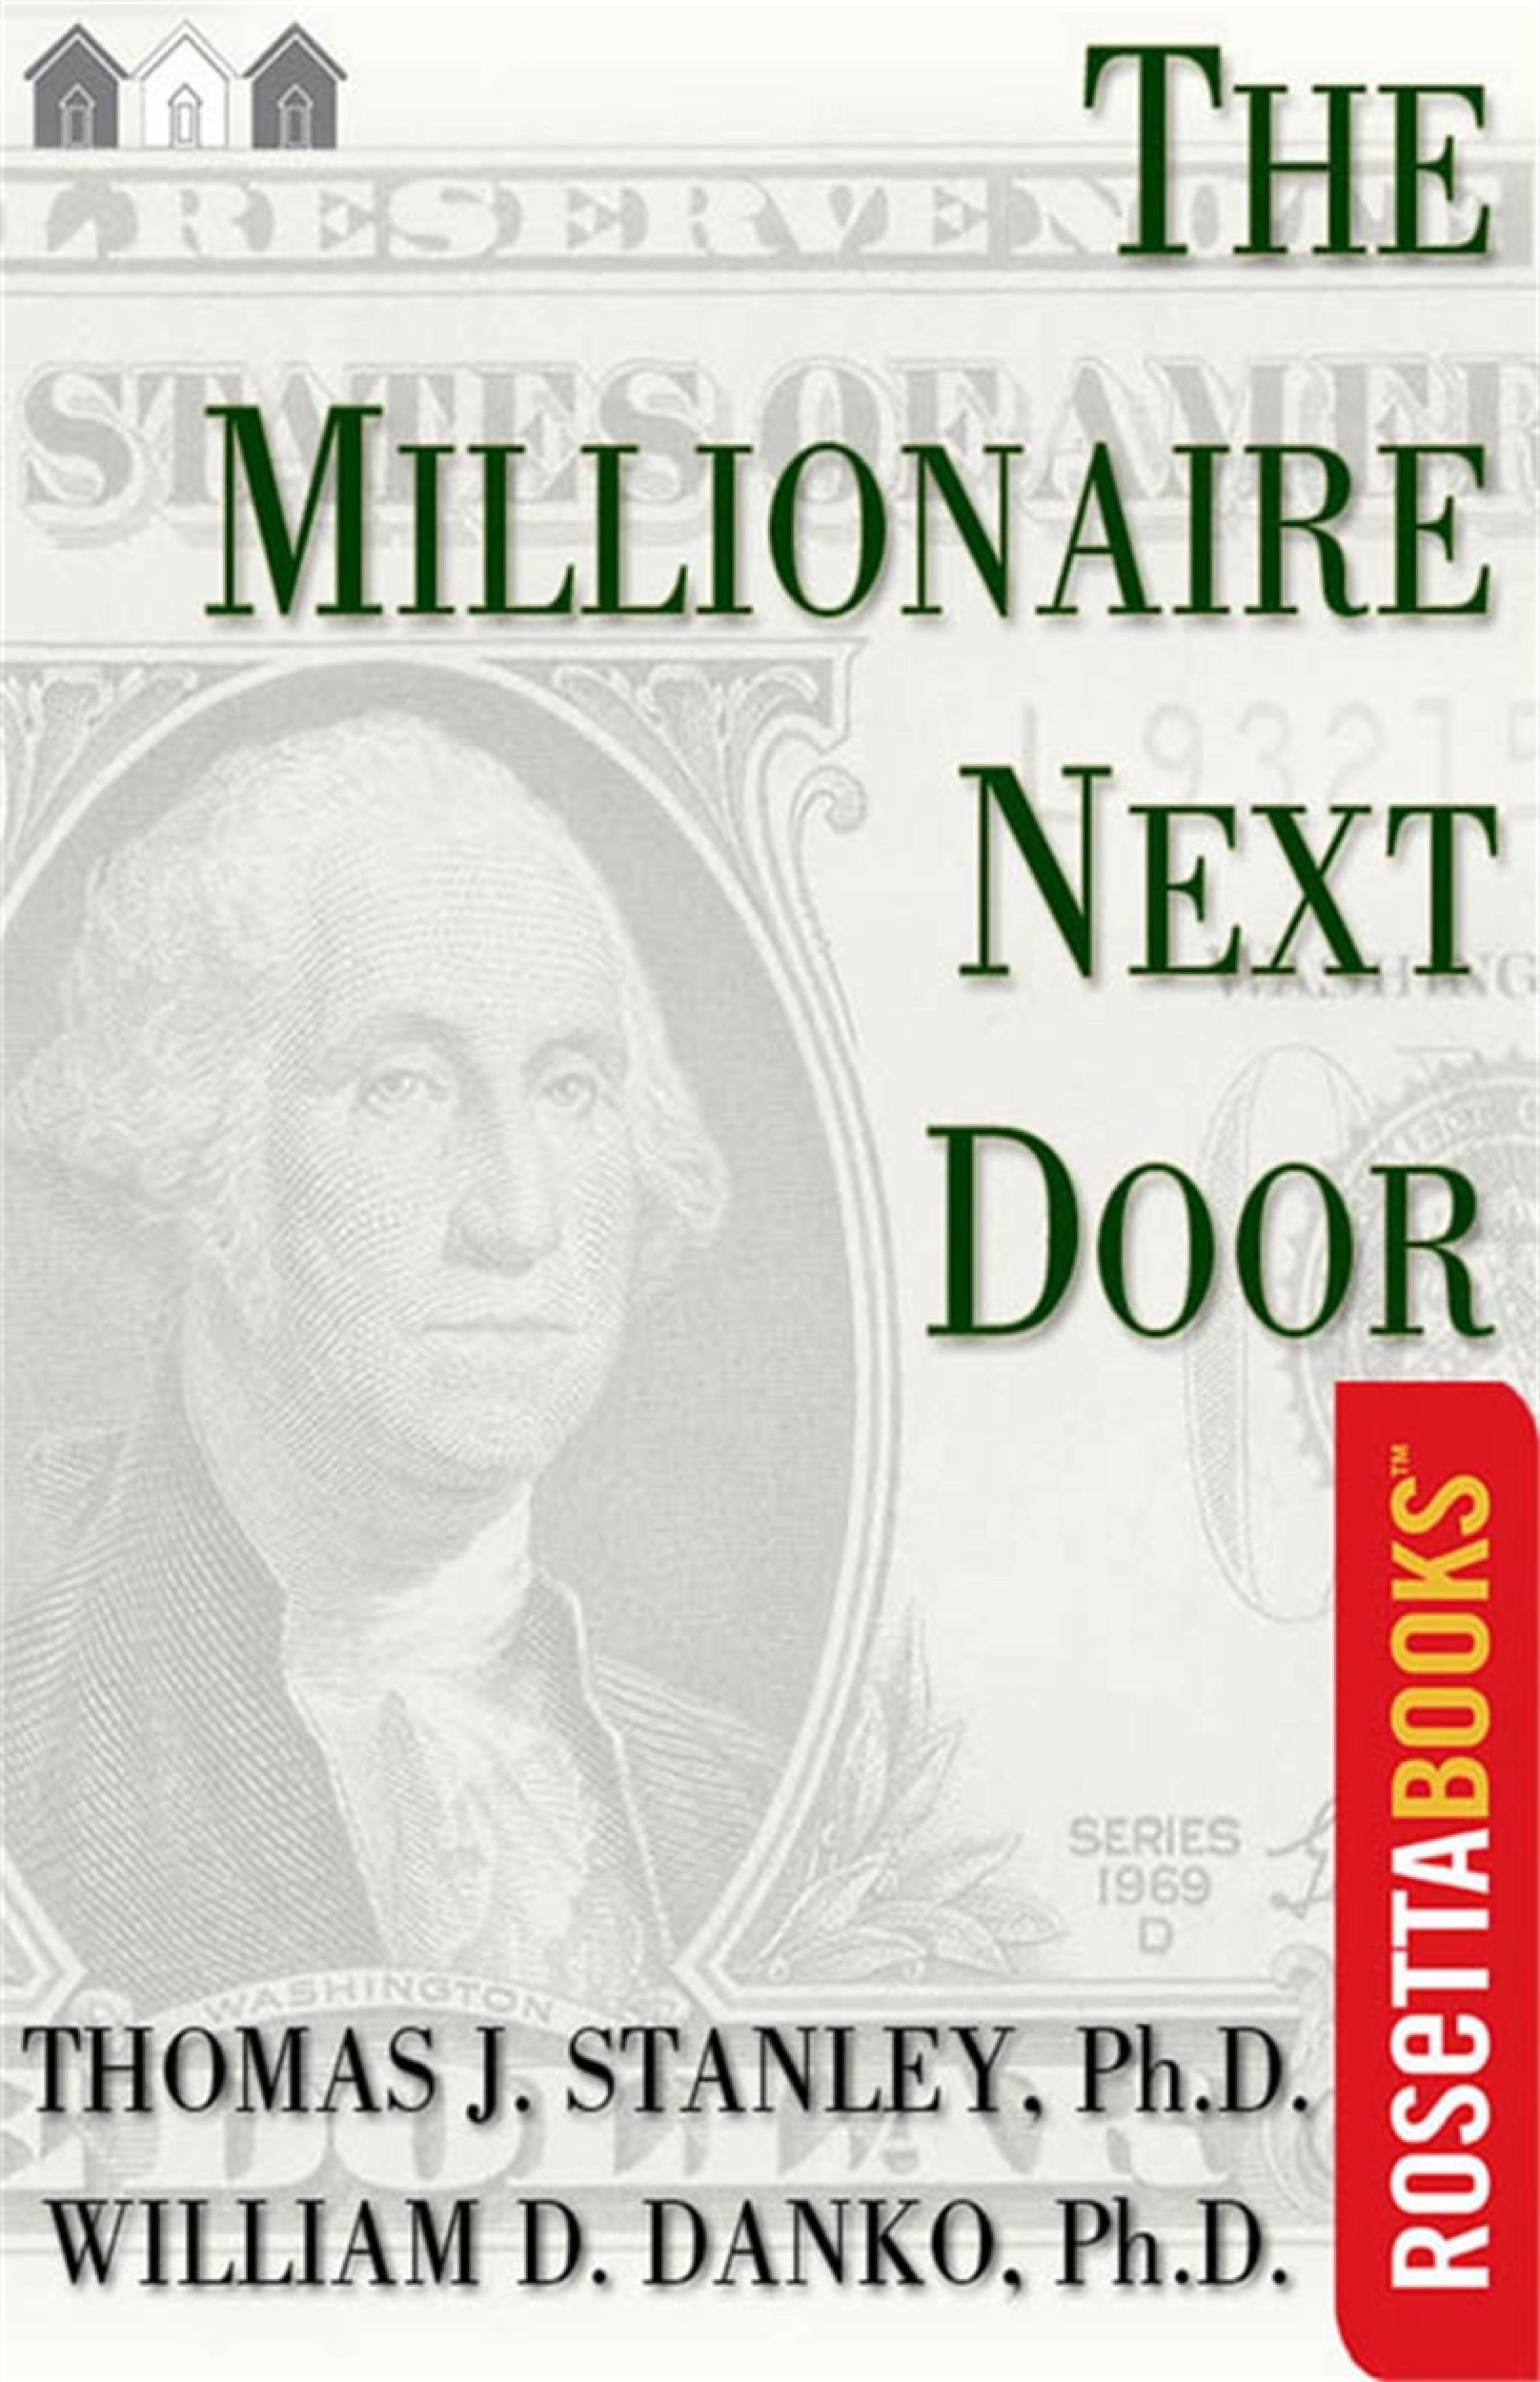 the millionaire next door audiobook free reddit